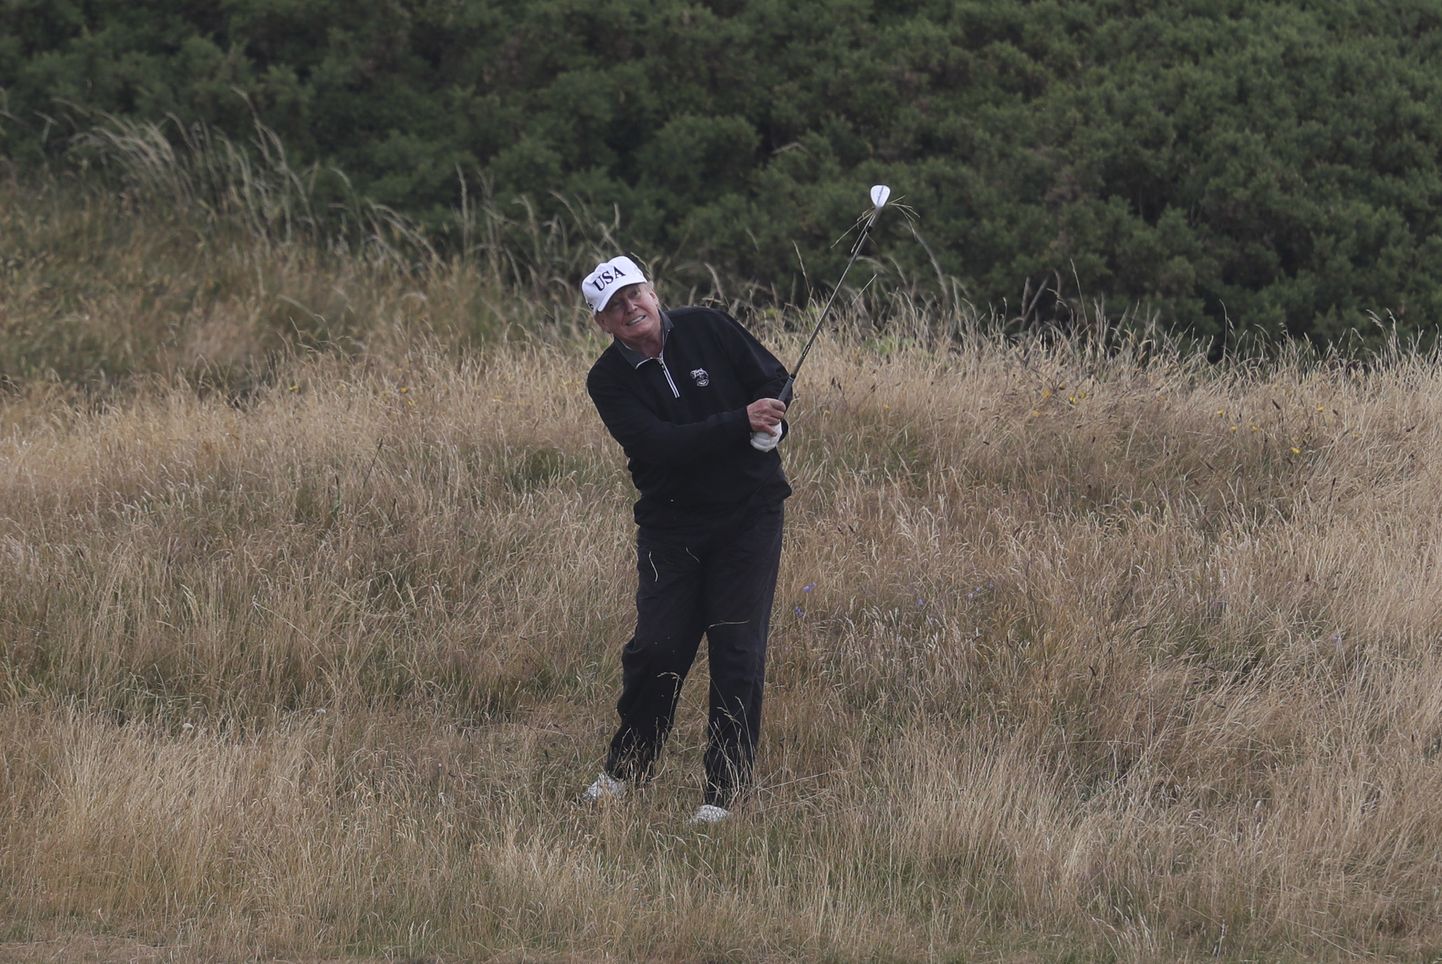 Ameerika Ühendriikide president Donald Trump veetis möödunud nädalavahetuse Šotimaal golfi mängides.